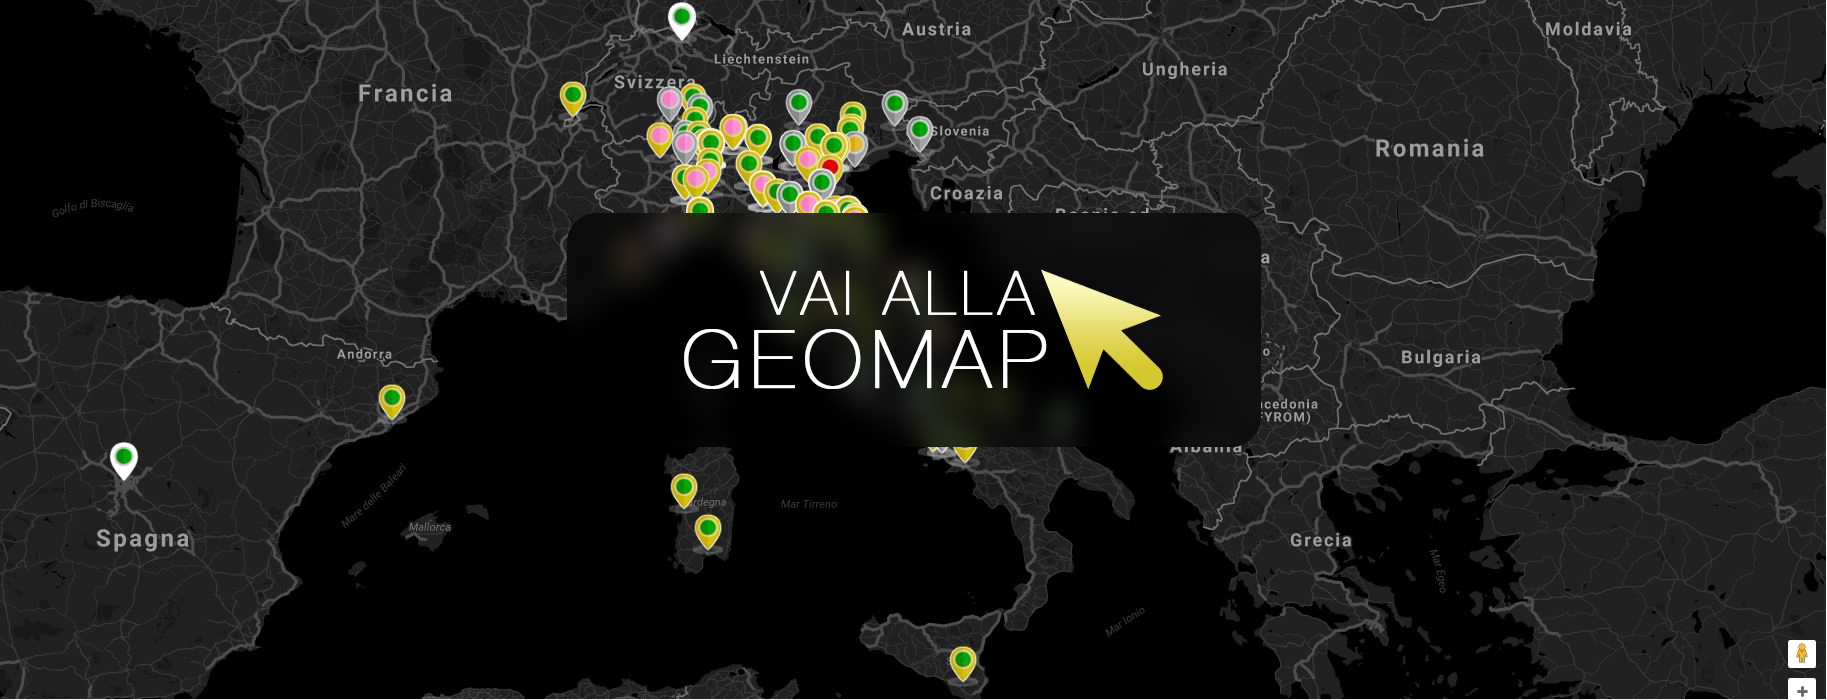 Guarda gli annunci a Palermo nella mappa intervattiva